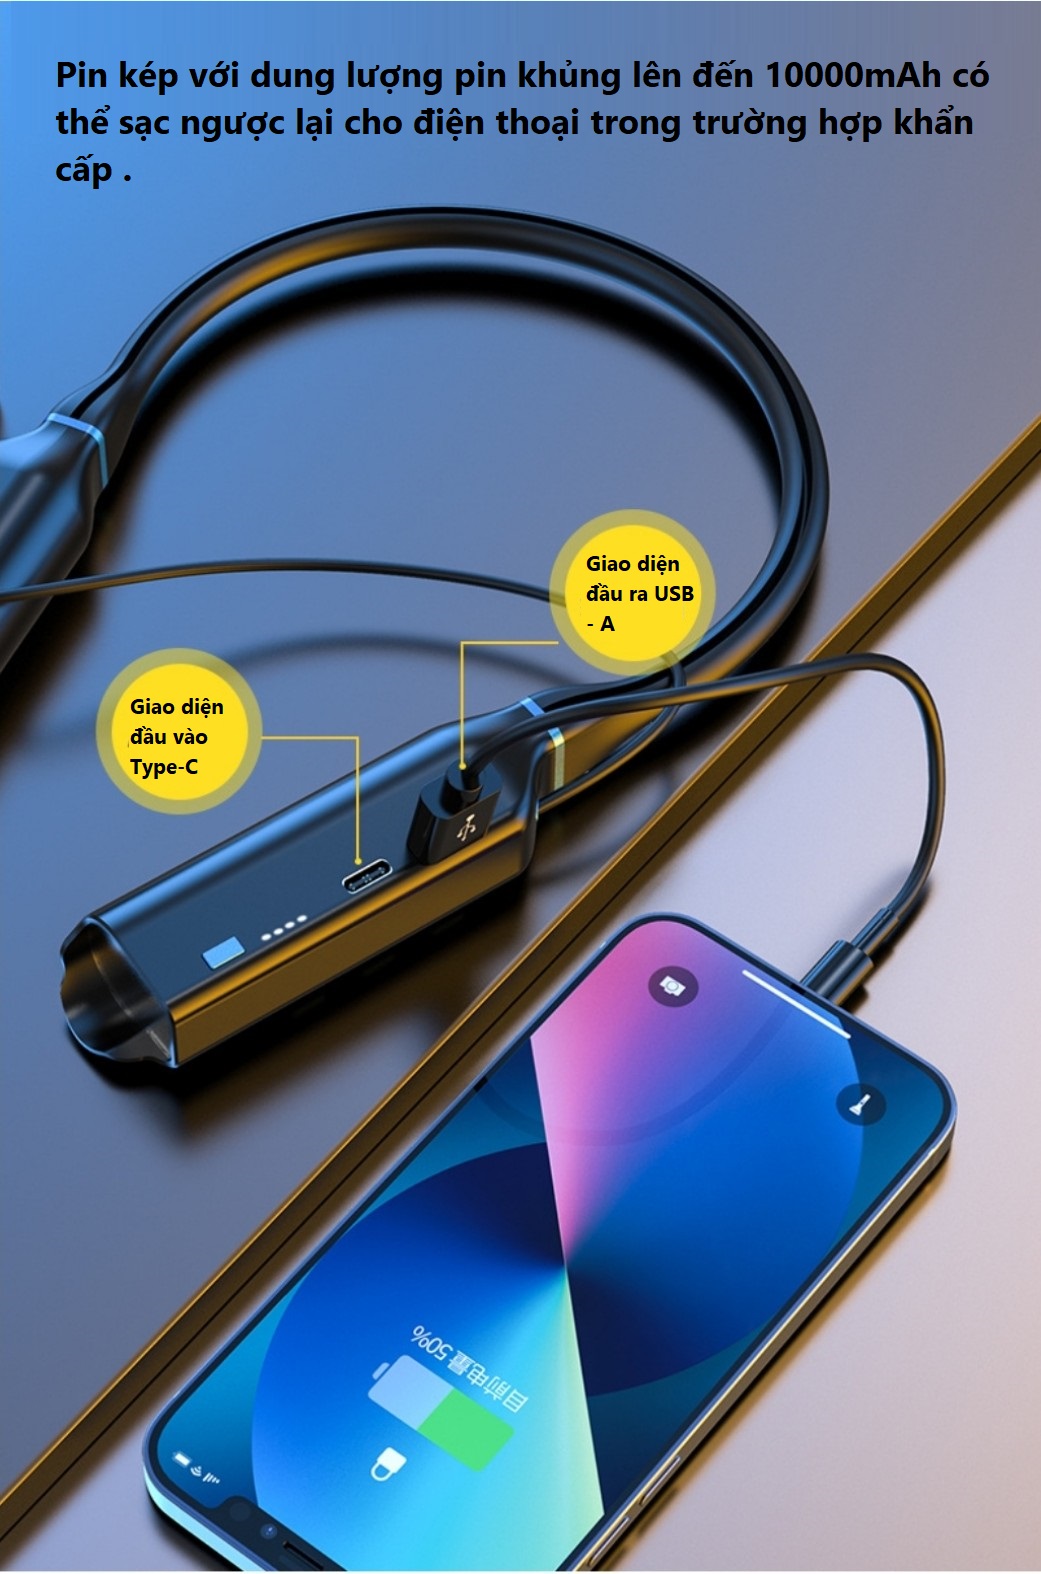 Tai nghe Bluetooth 5.2 thể thao quàng cổ pin 10000mAh  sử dụng liên tục lên đến 1000 giờ , 4 loa 8 lõi âm thanh hifi - stereo có thể điều chỉnh bass/ treble  , có khe lắp thẻ nhớ , hiển thị led báo % pin